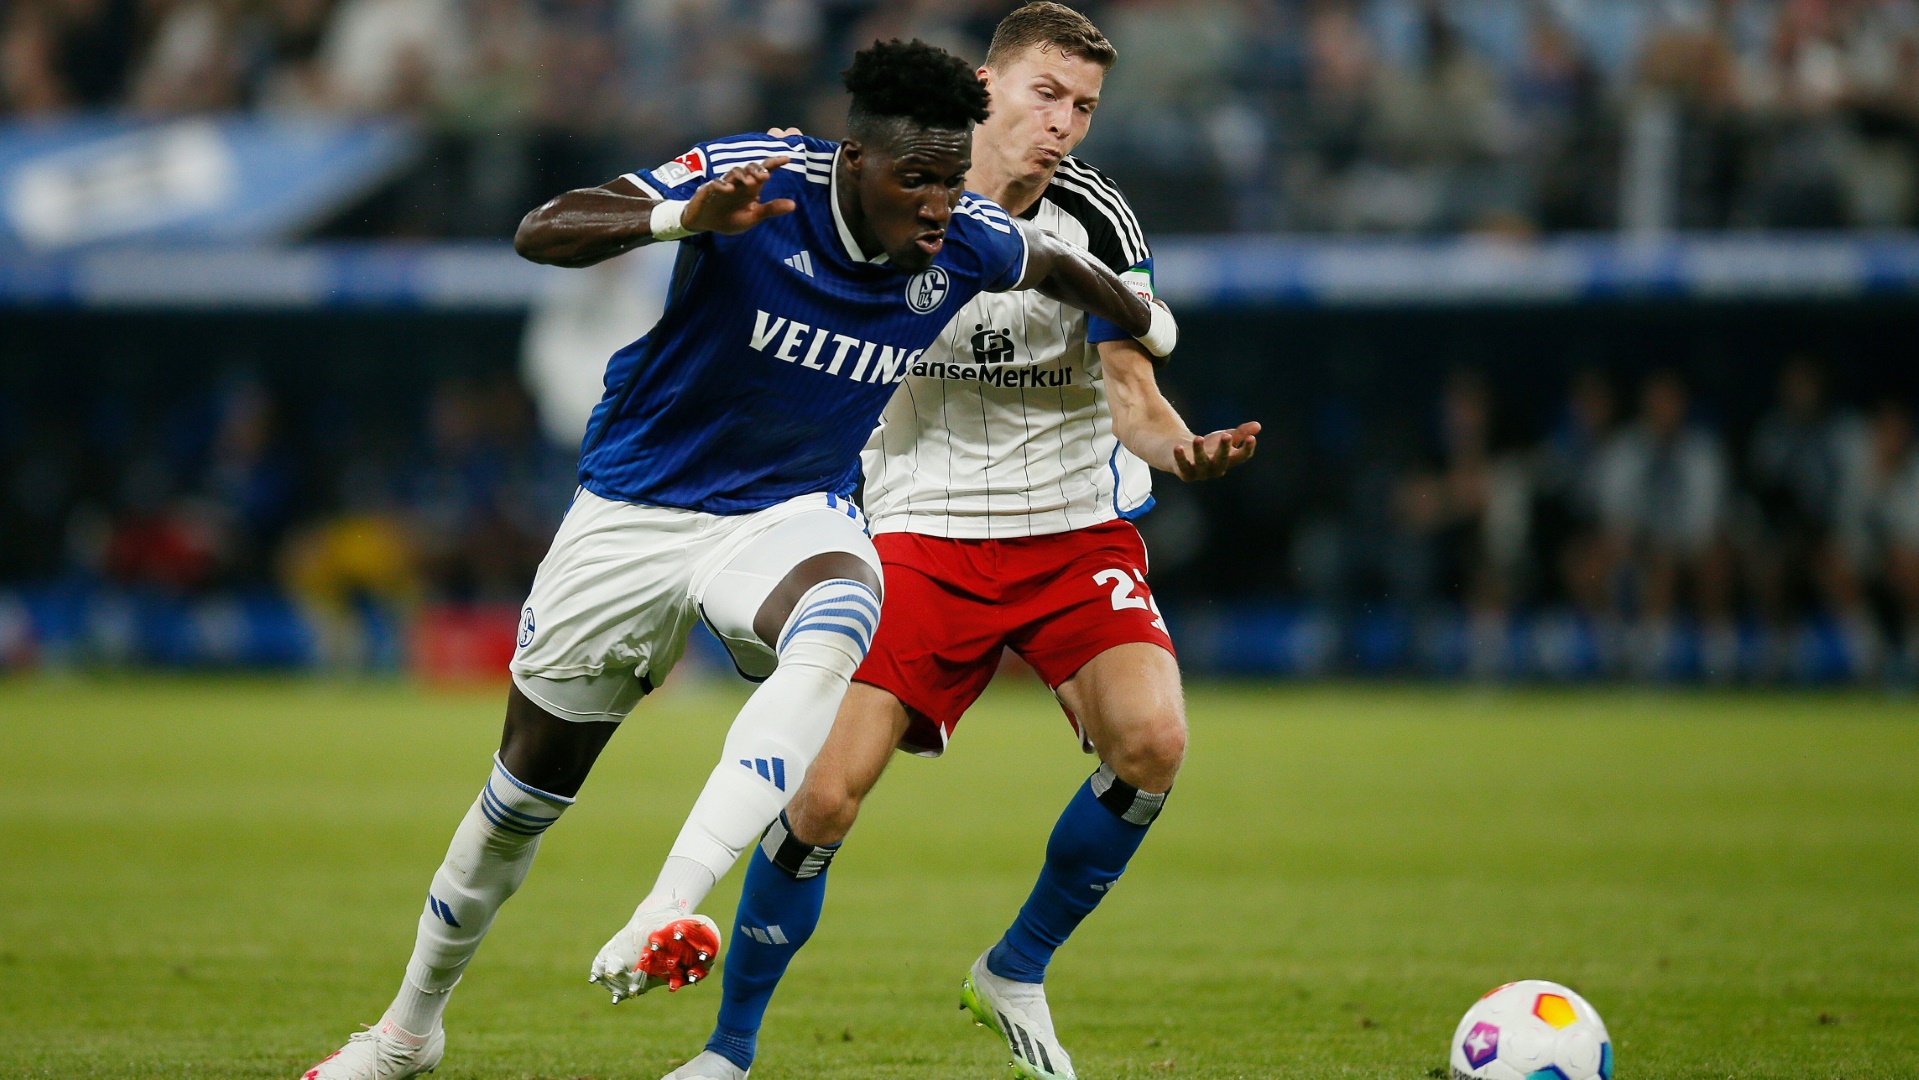 Der HSV gewinnt spektakulär mit 5:3 gegen Schalke